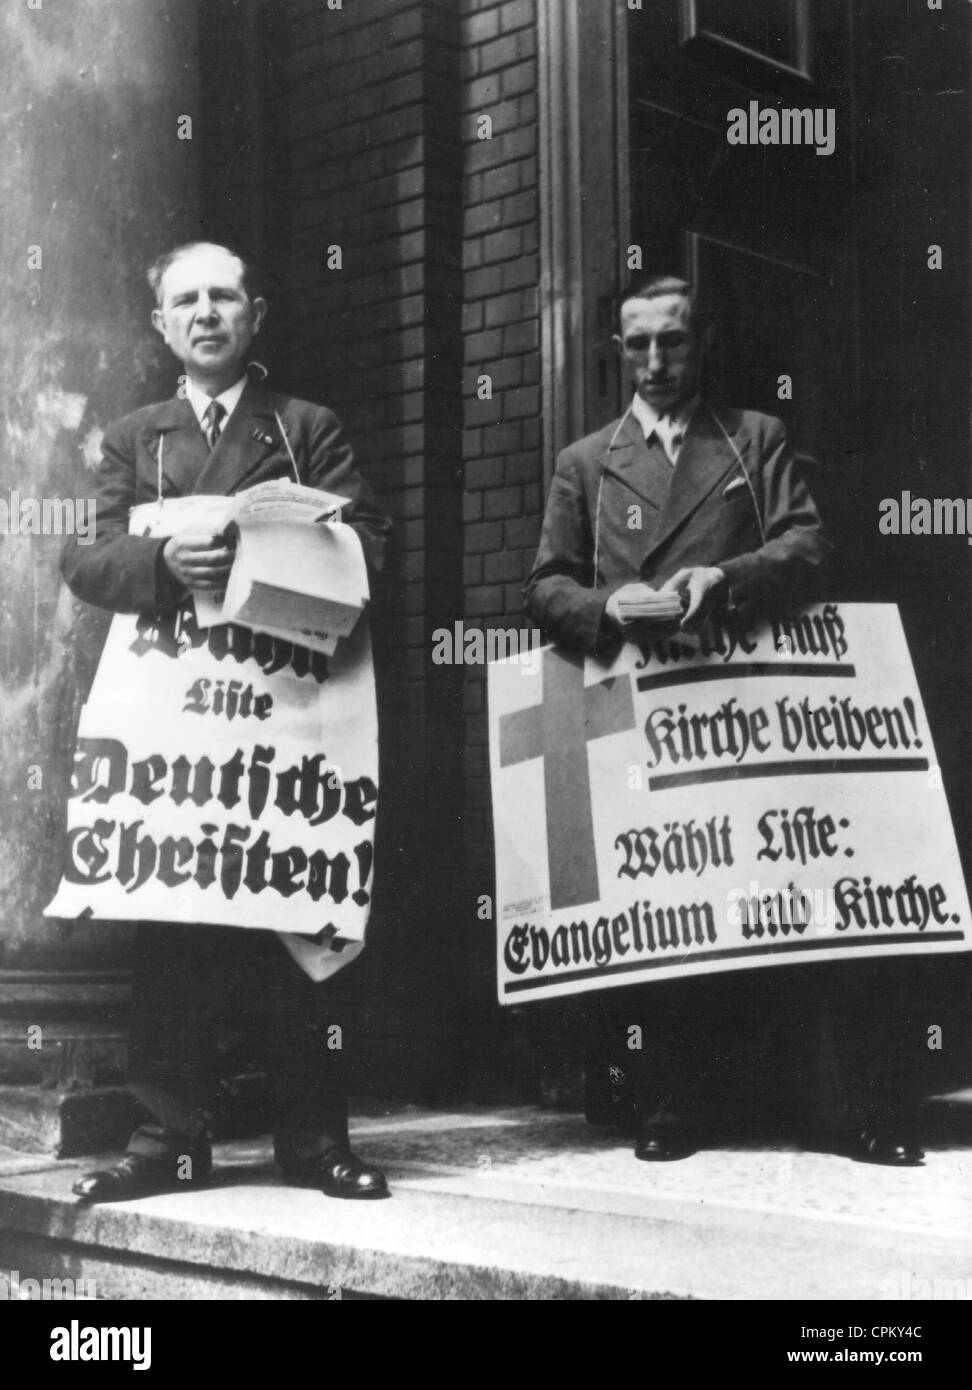 Wähler in der "Deutschen Christen" und "Evangelium und Kirche", 1933 Stockfoto